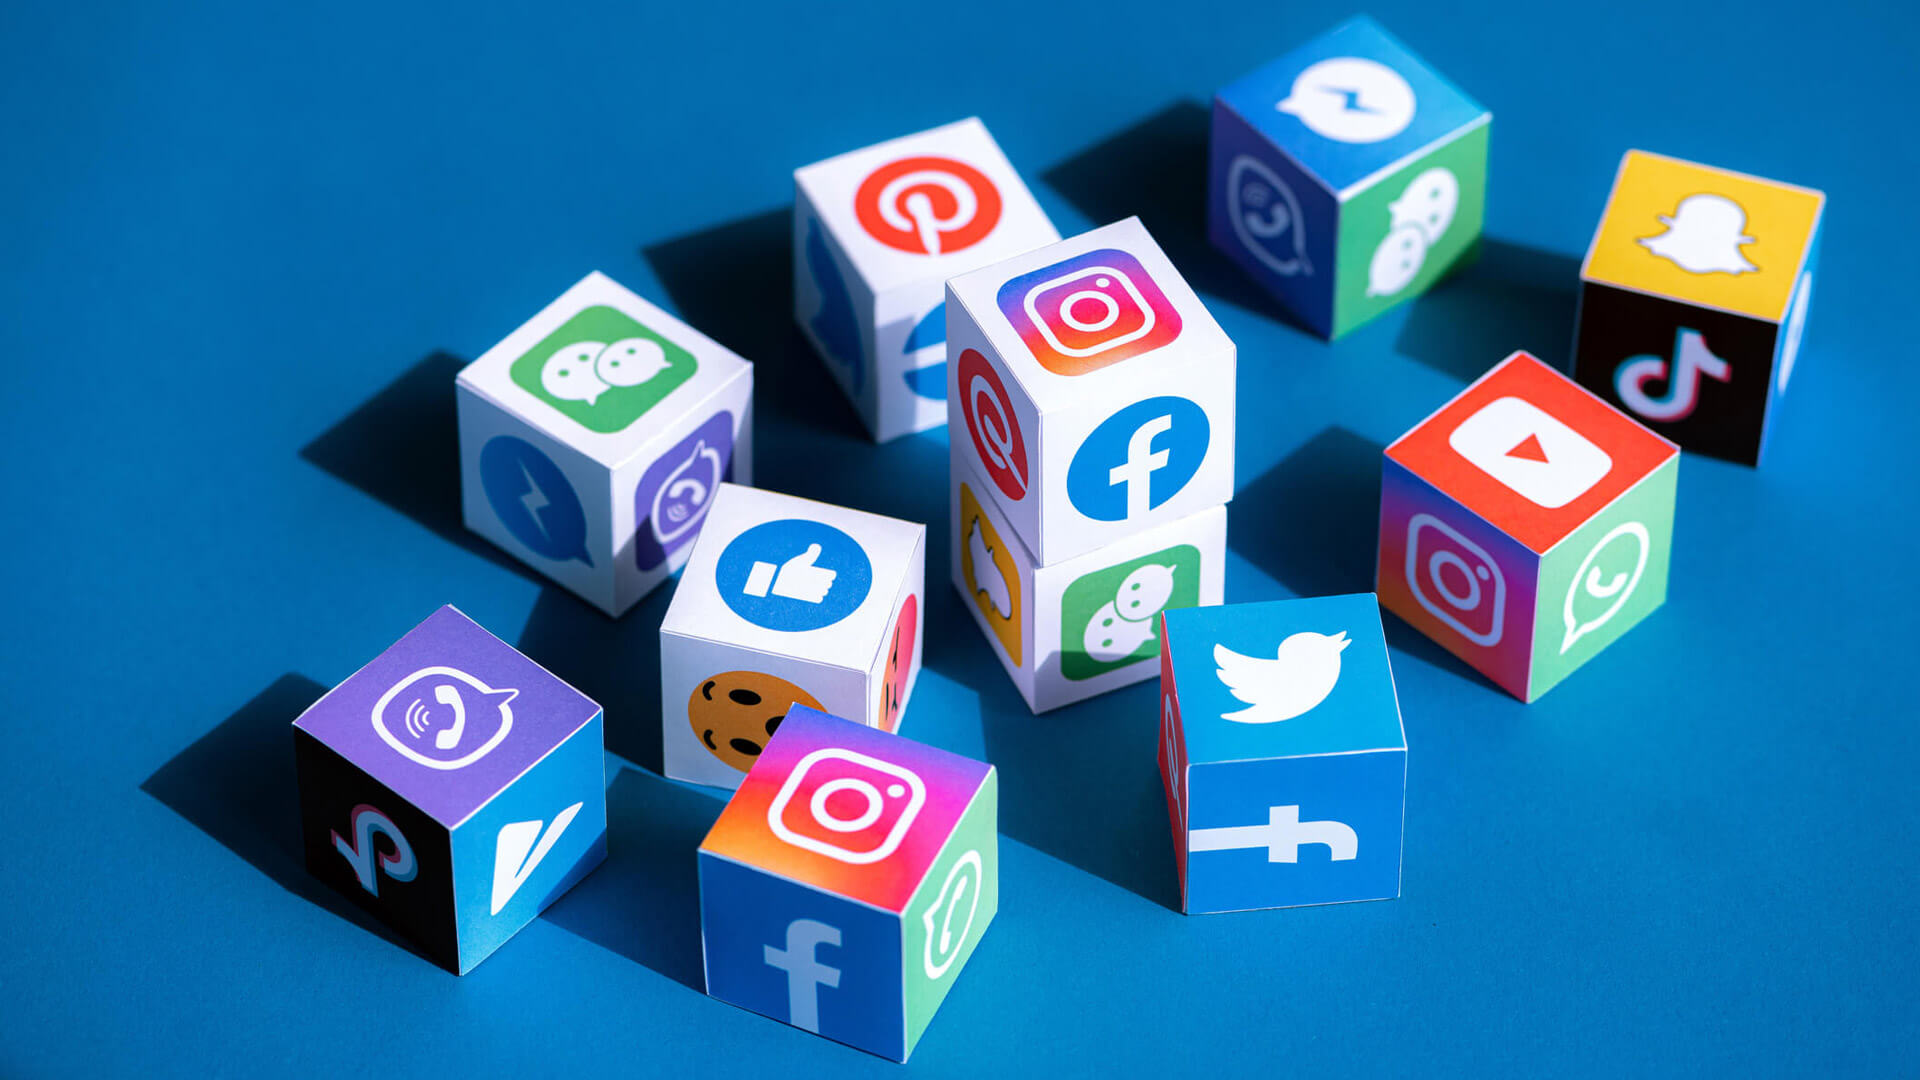 Social media icons on building blocks